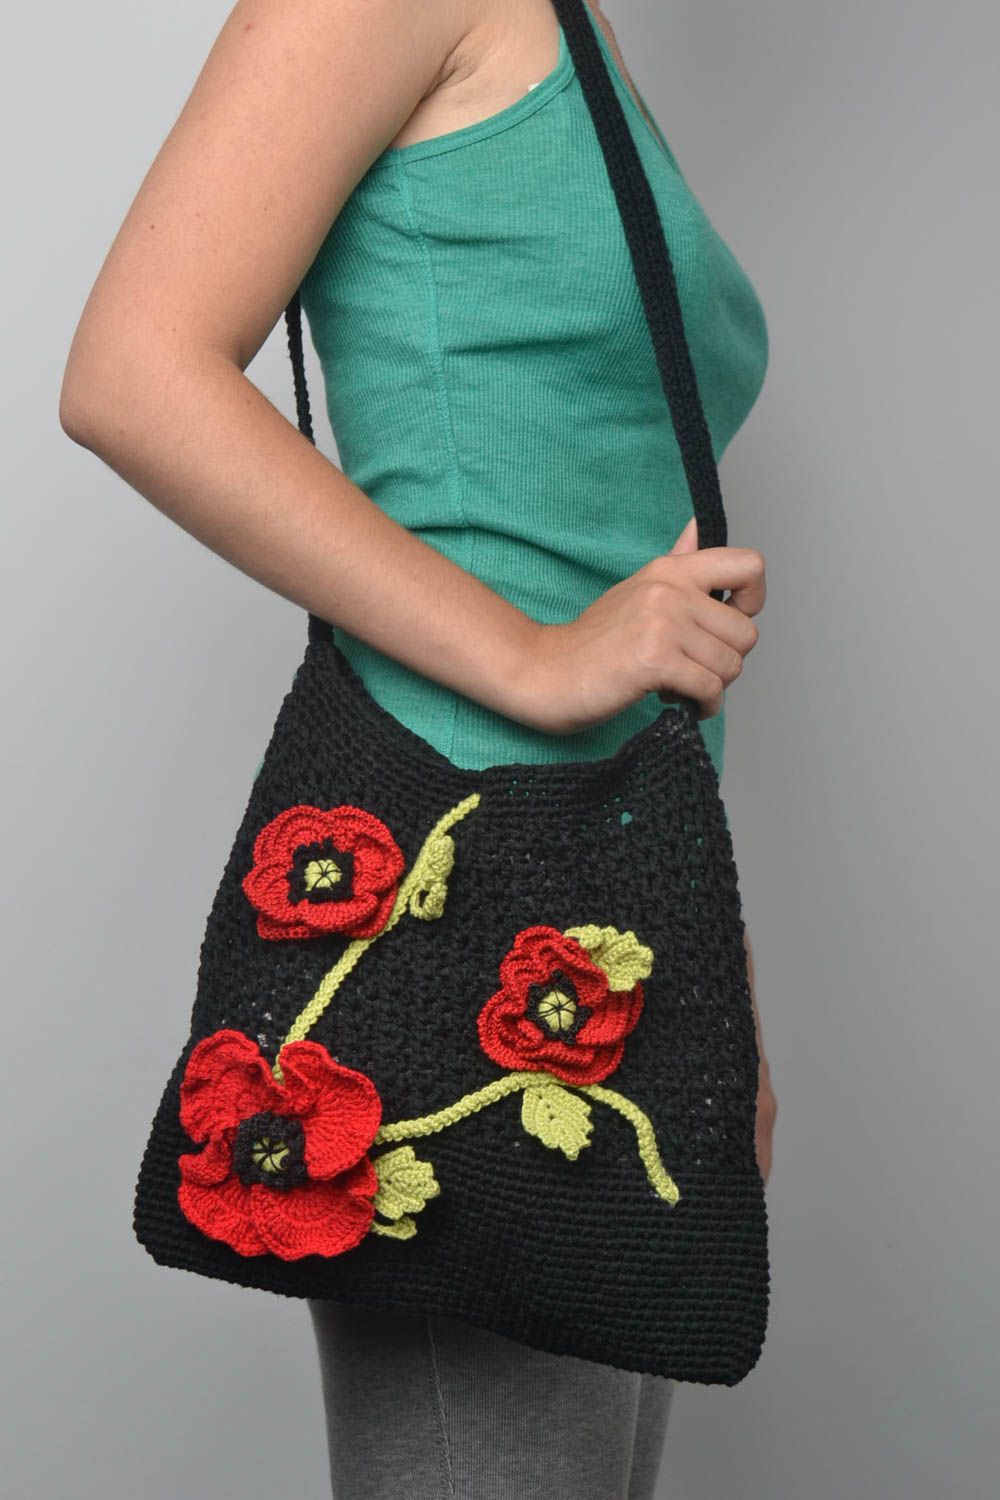 Sac noir tricoté coton fait main Accessoire femme avec fleurs Cadeau original photo 1